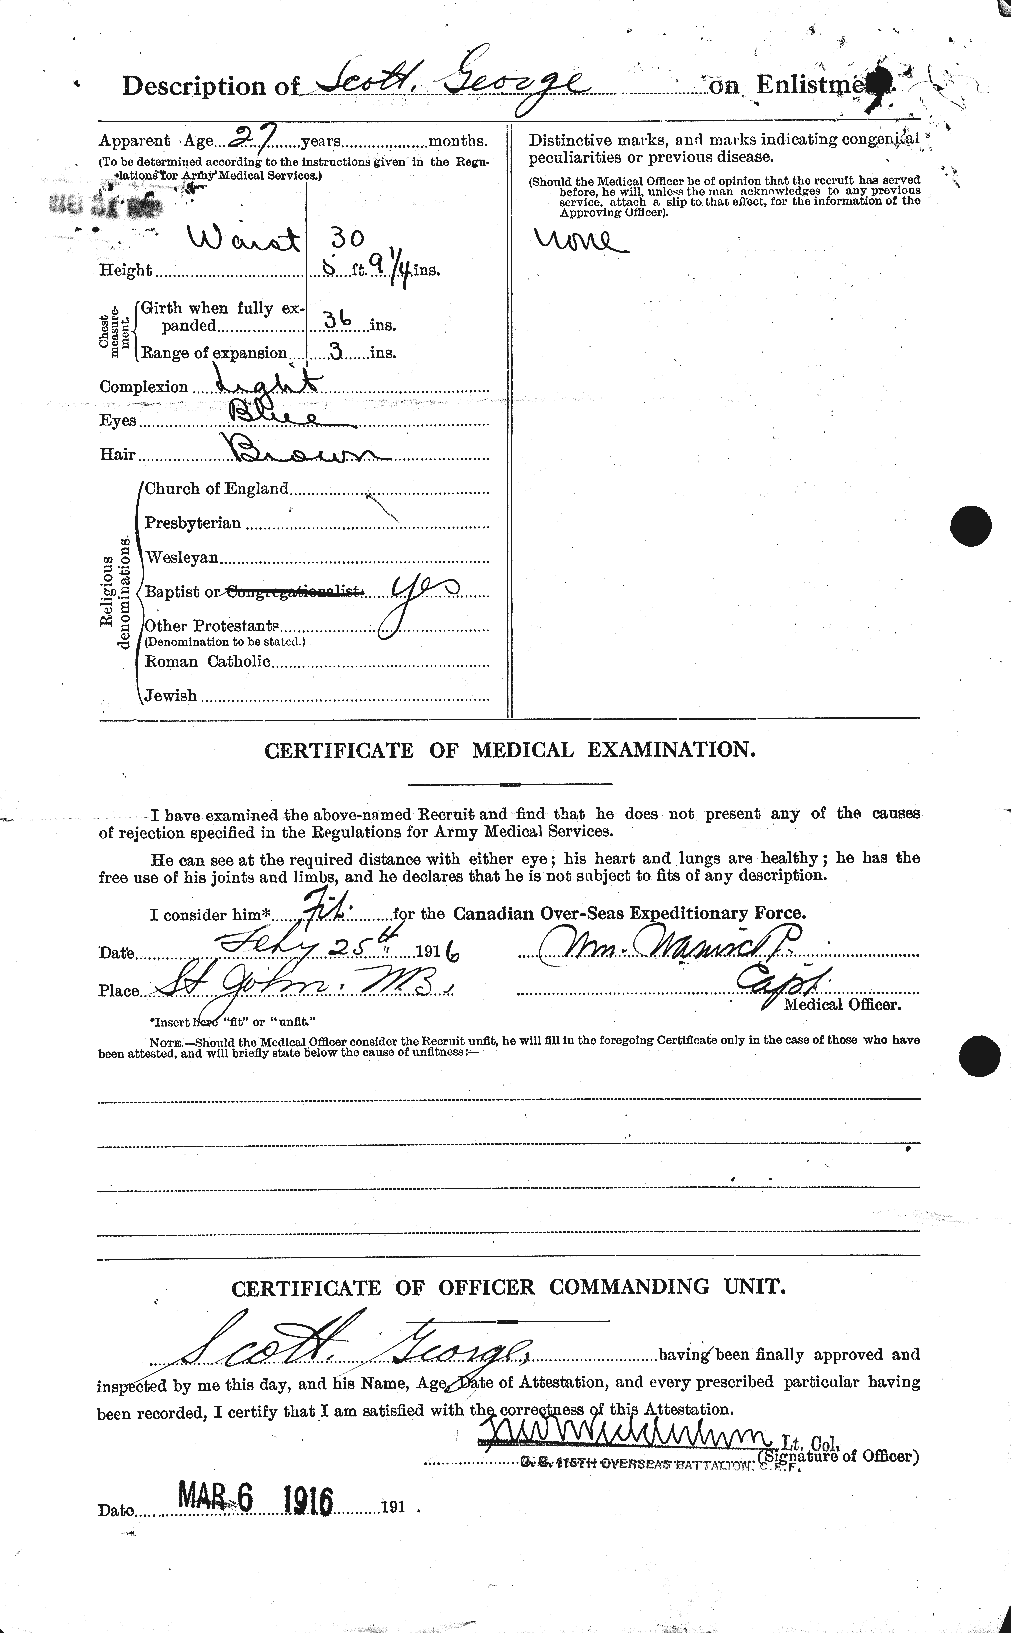 Dossiers du Personnel de la Première Guerre mondiale - CEC 083579b